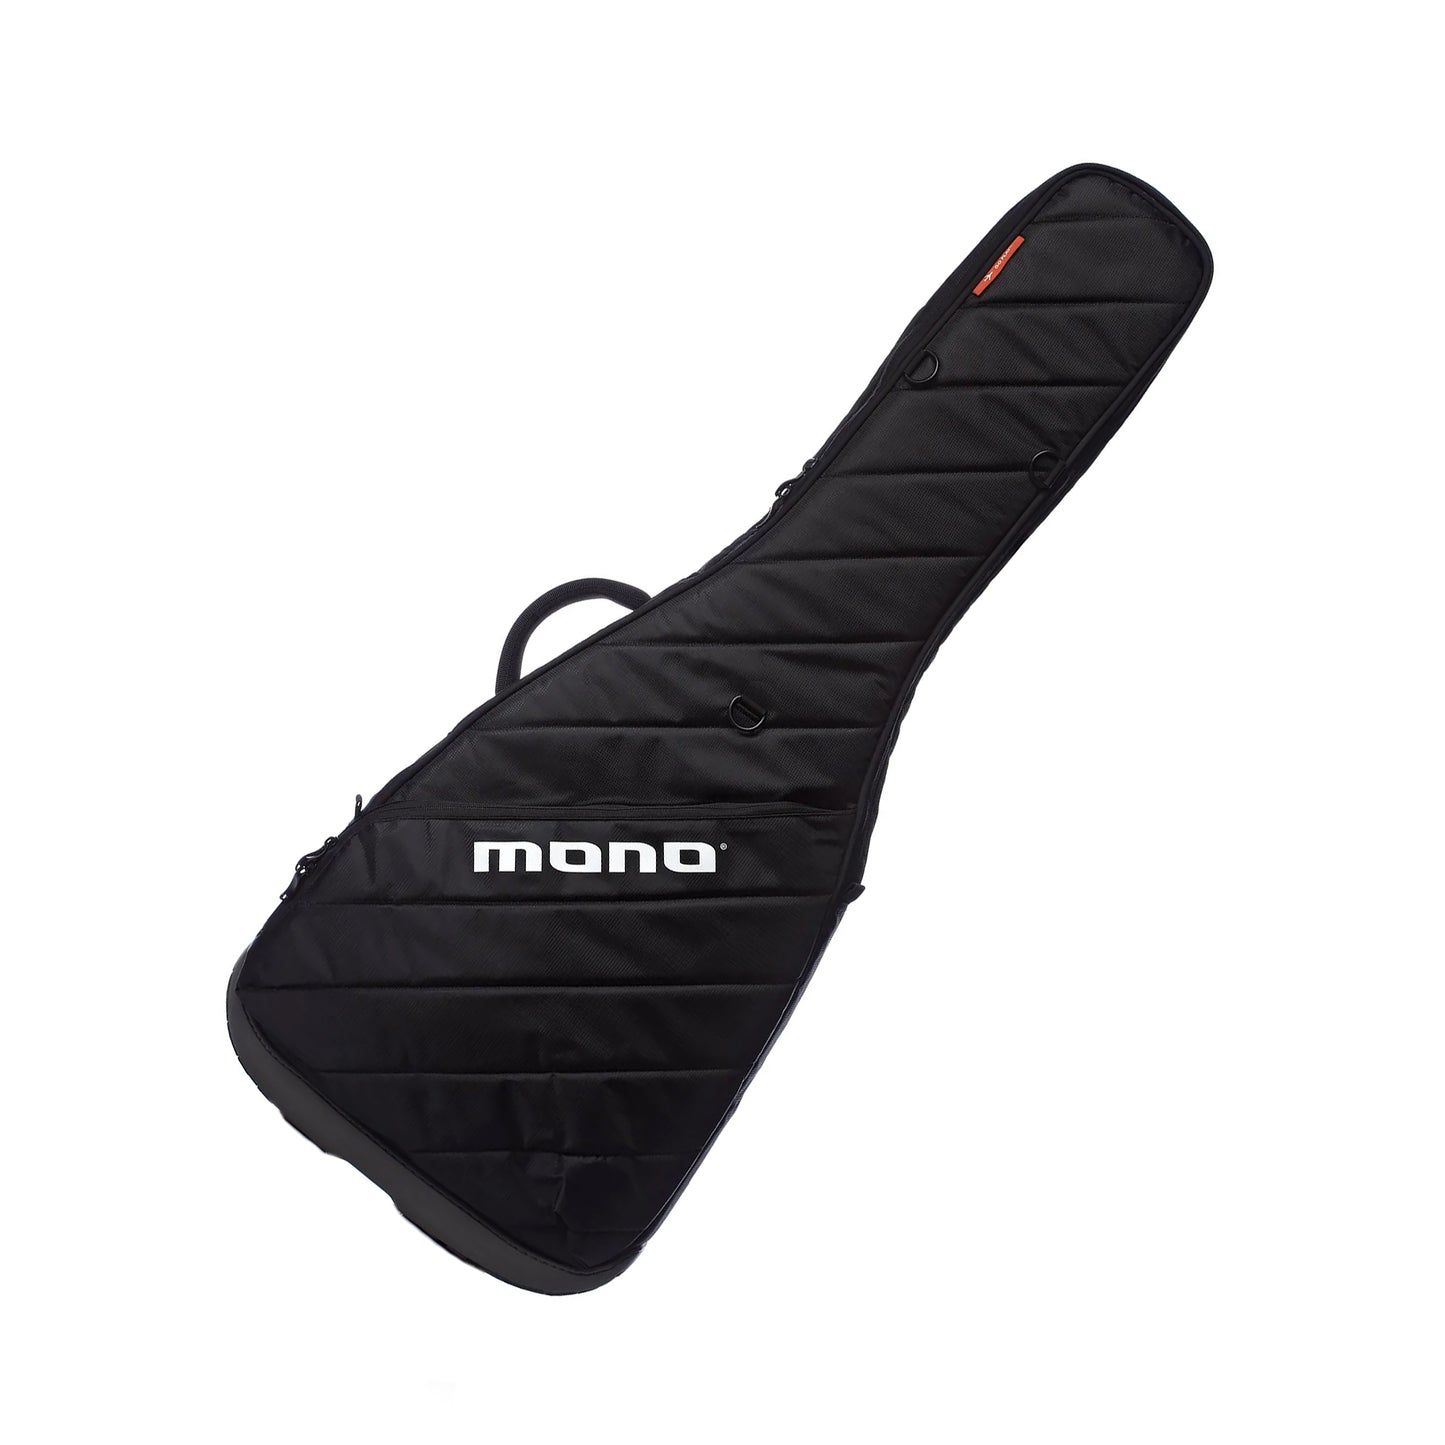 Mono M80 Vertigo Semi-Hollow Guitar Gig Bag